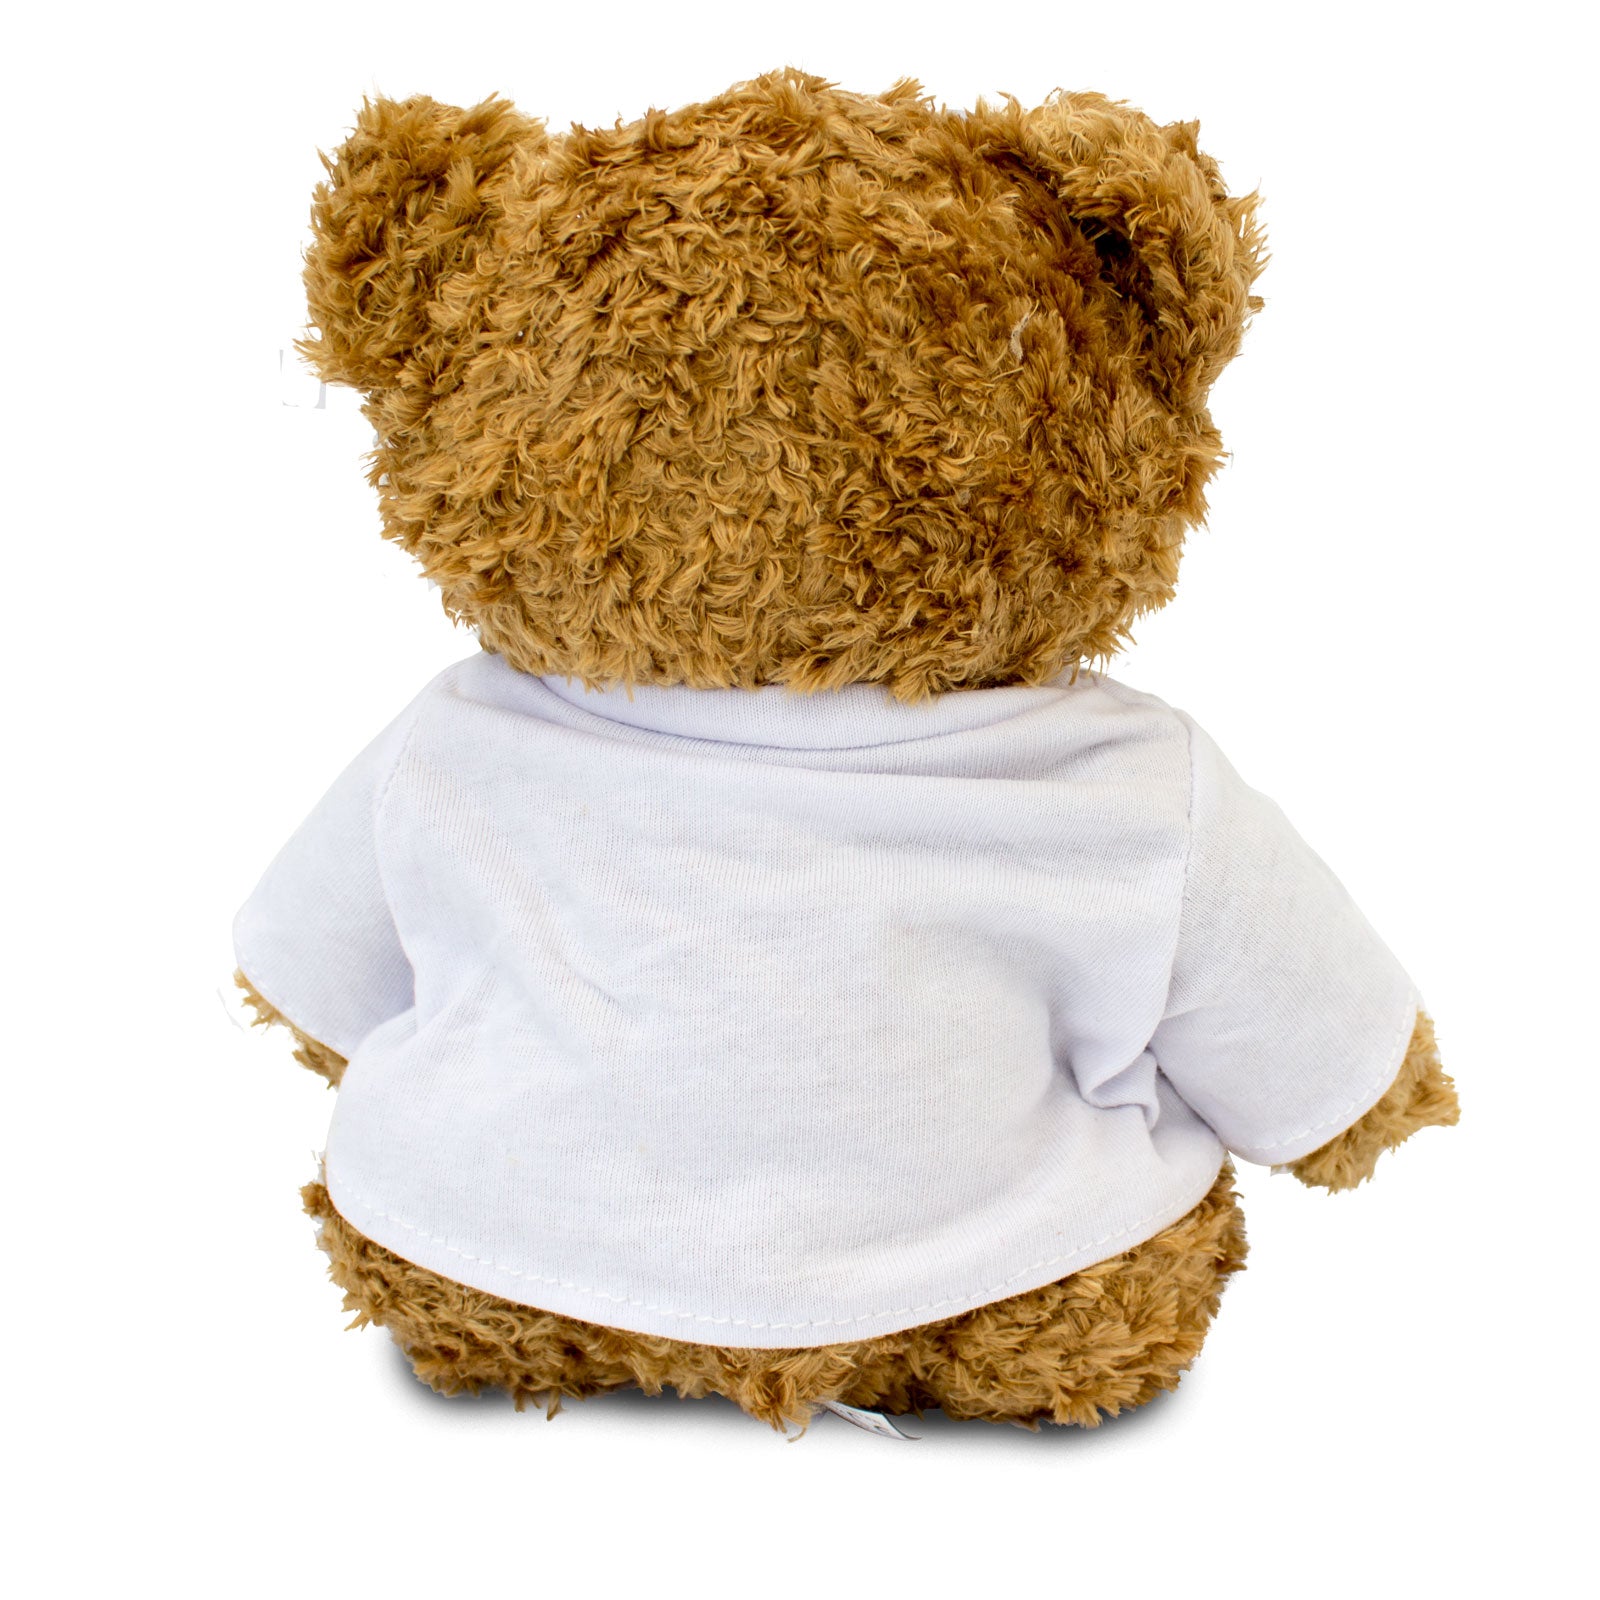 Get Well Soon Holly - Teddy Bear